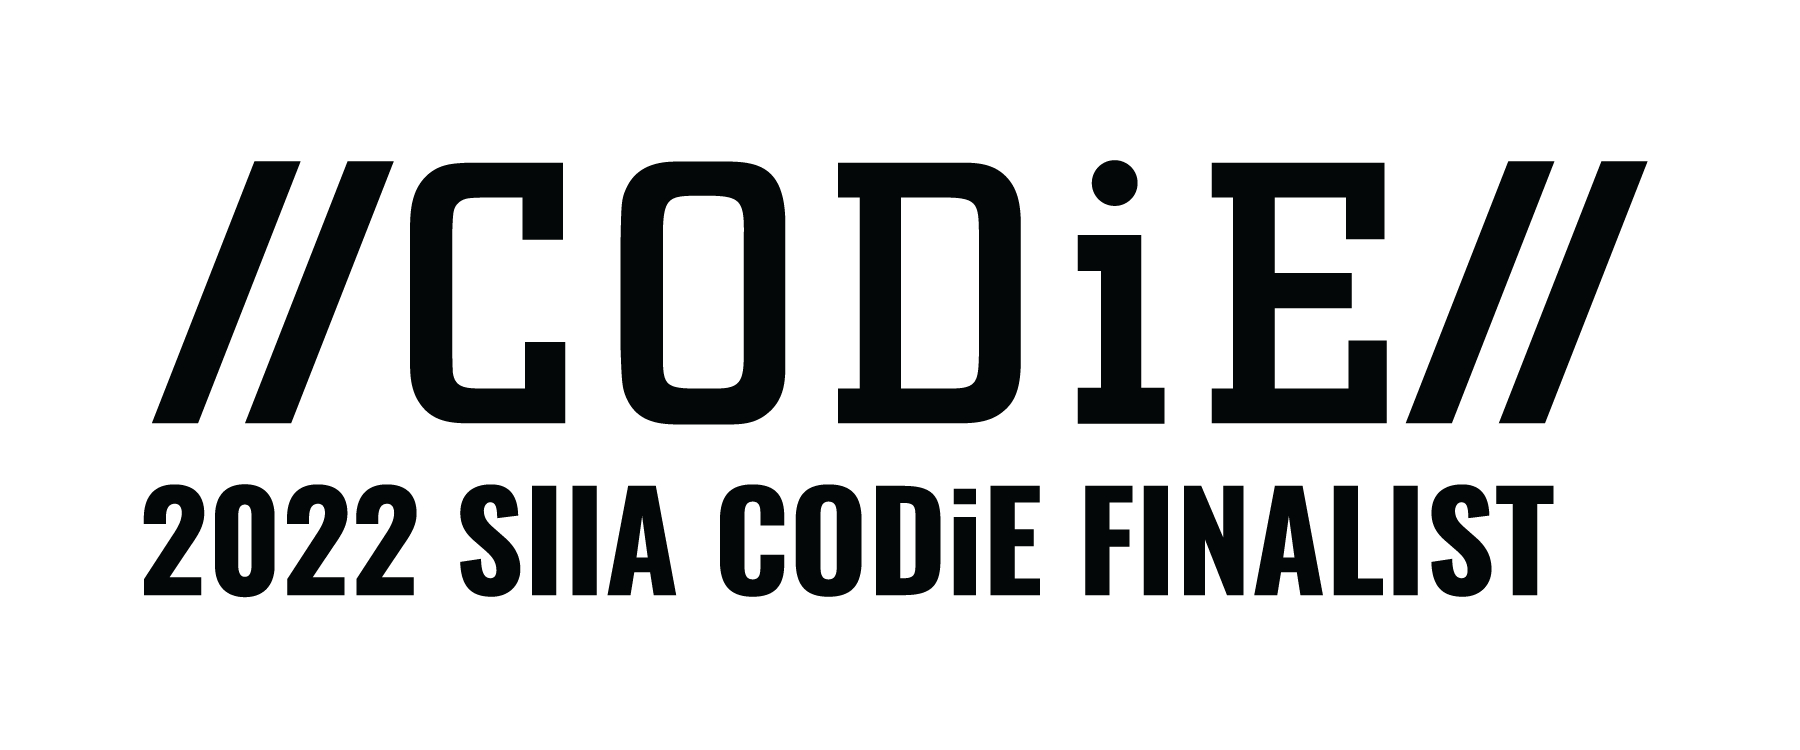 CODIE 2022 finalist logo